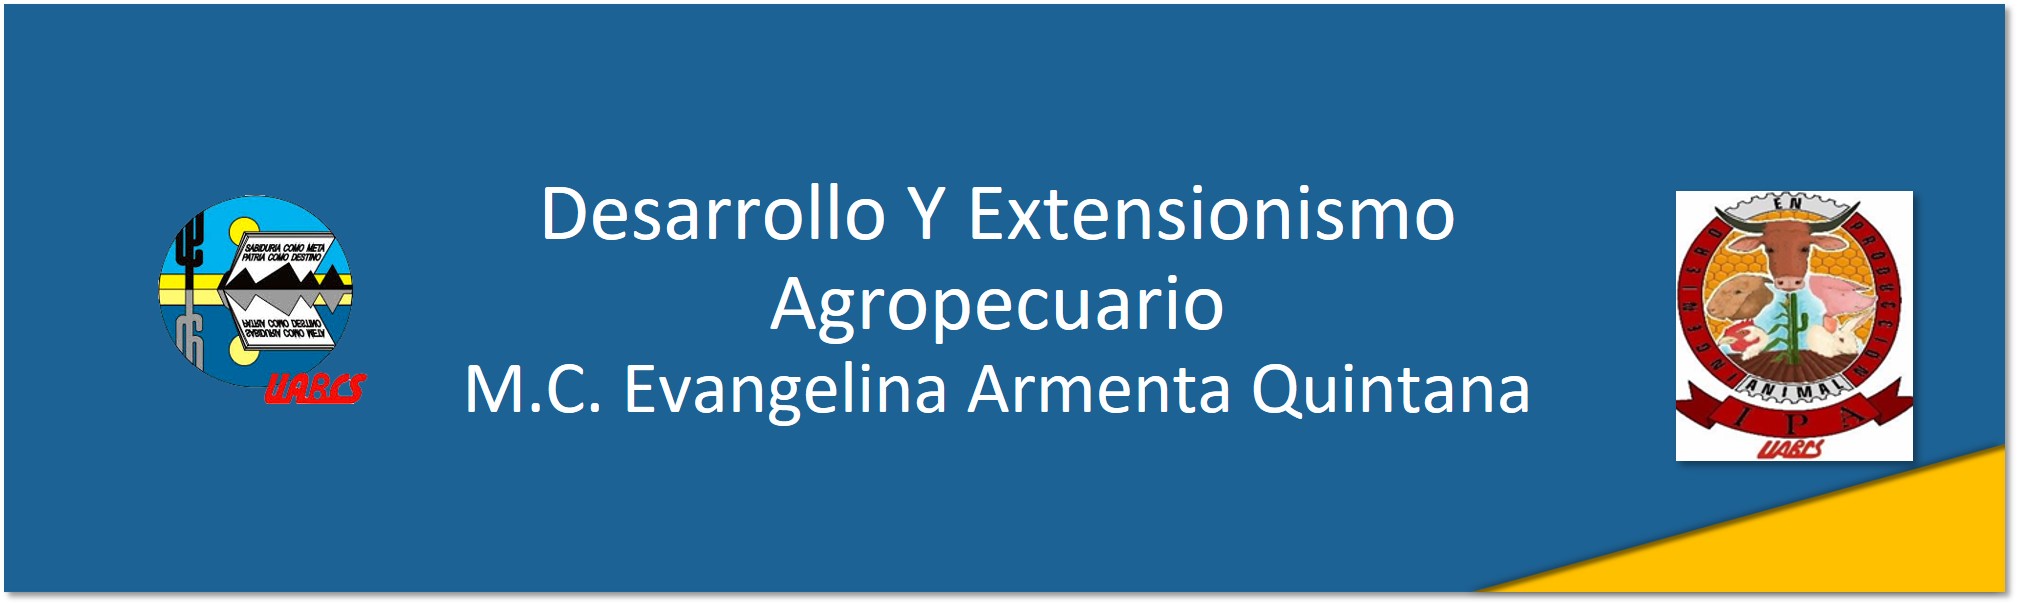 Course Image Desarrollo y Extensionismo Agropecuario